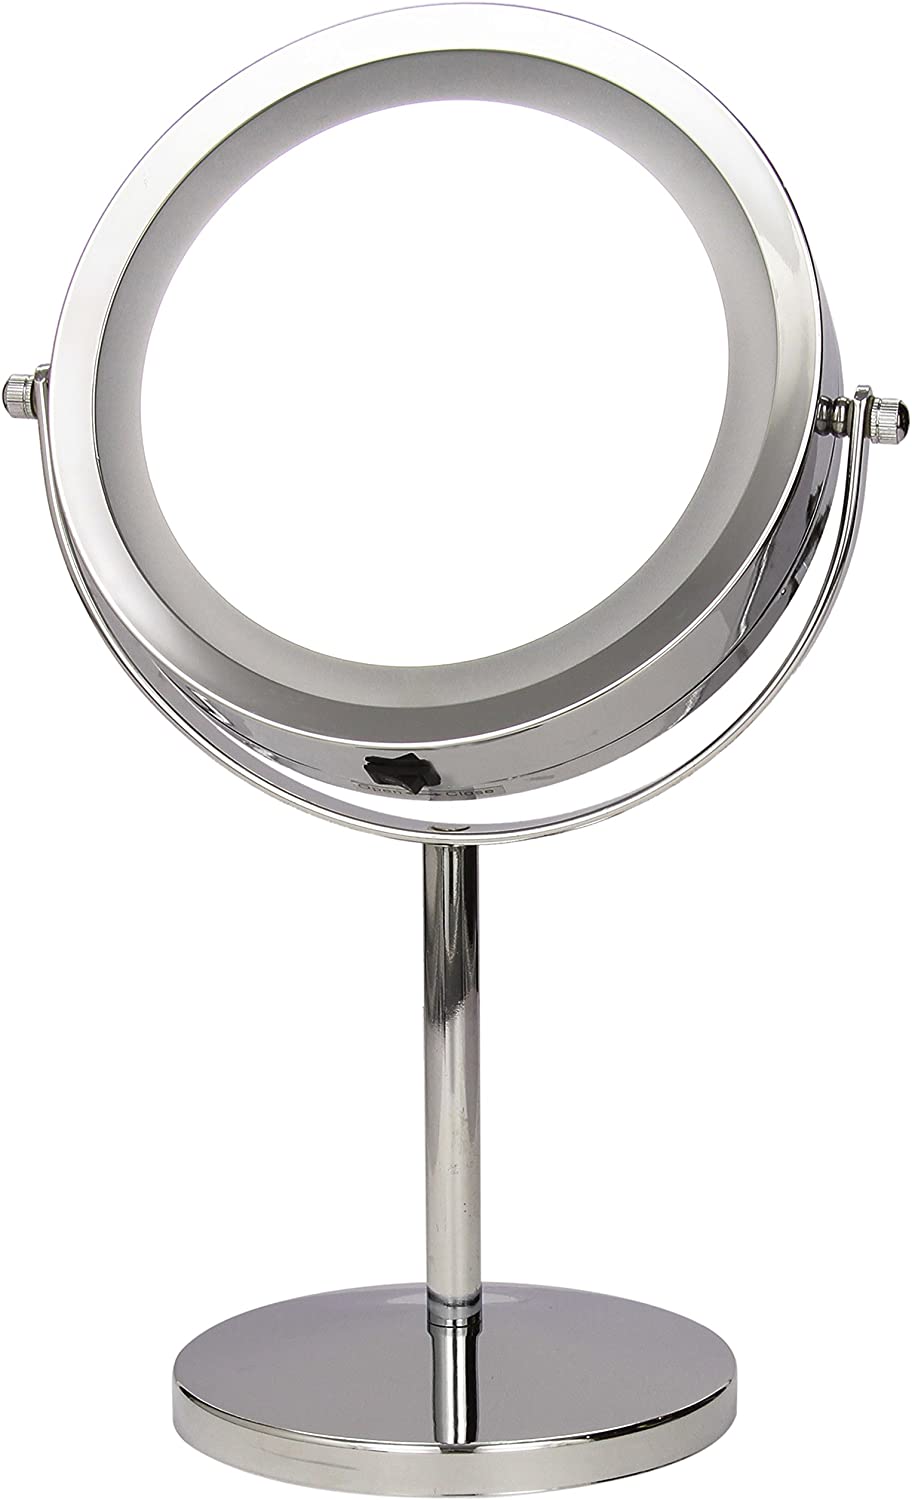 Vergrößerungs-Leuchtspiegel in Silber, rostfreier LED-Kosmetikspiegel verchromt, robuster Badezimmerspiegel mit 3-facher Vergrößerung, Rasierspiegel rund, Durchmesser: ca. 17 cm